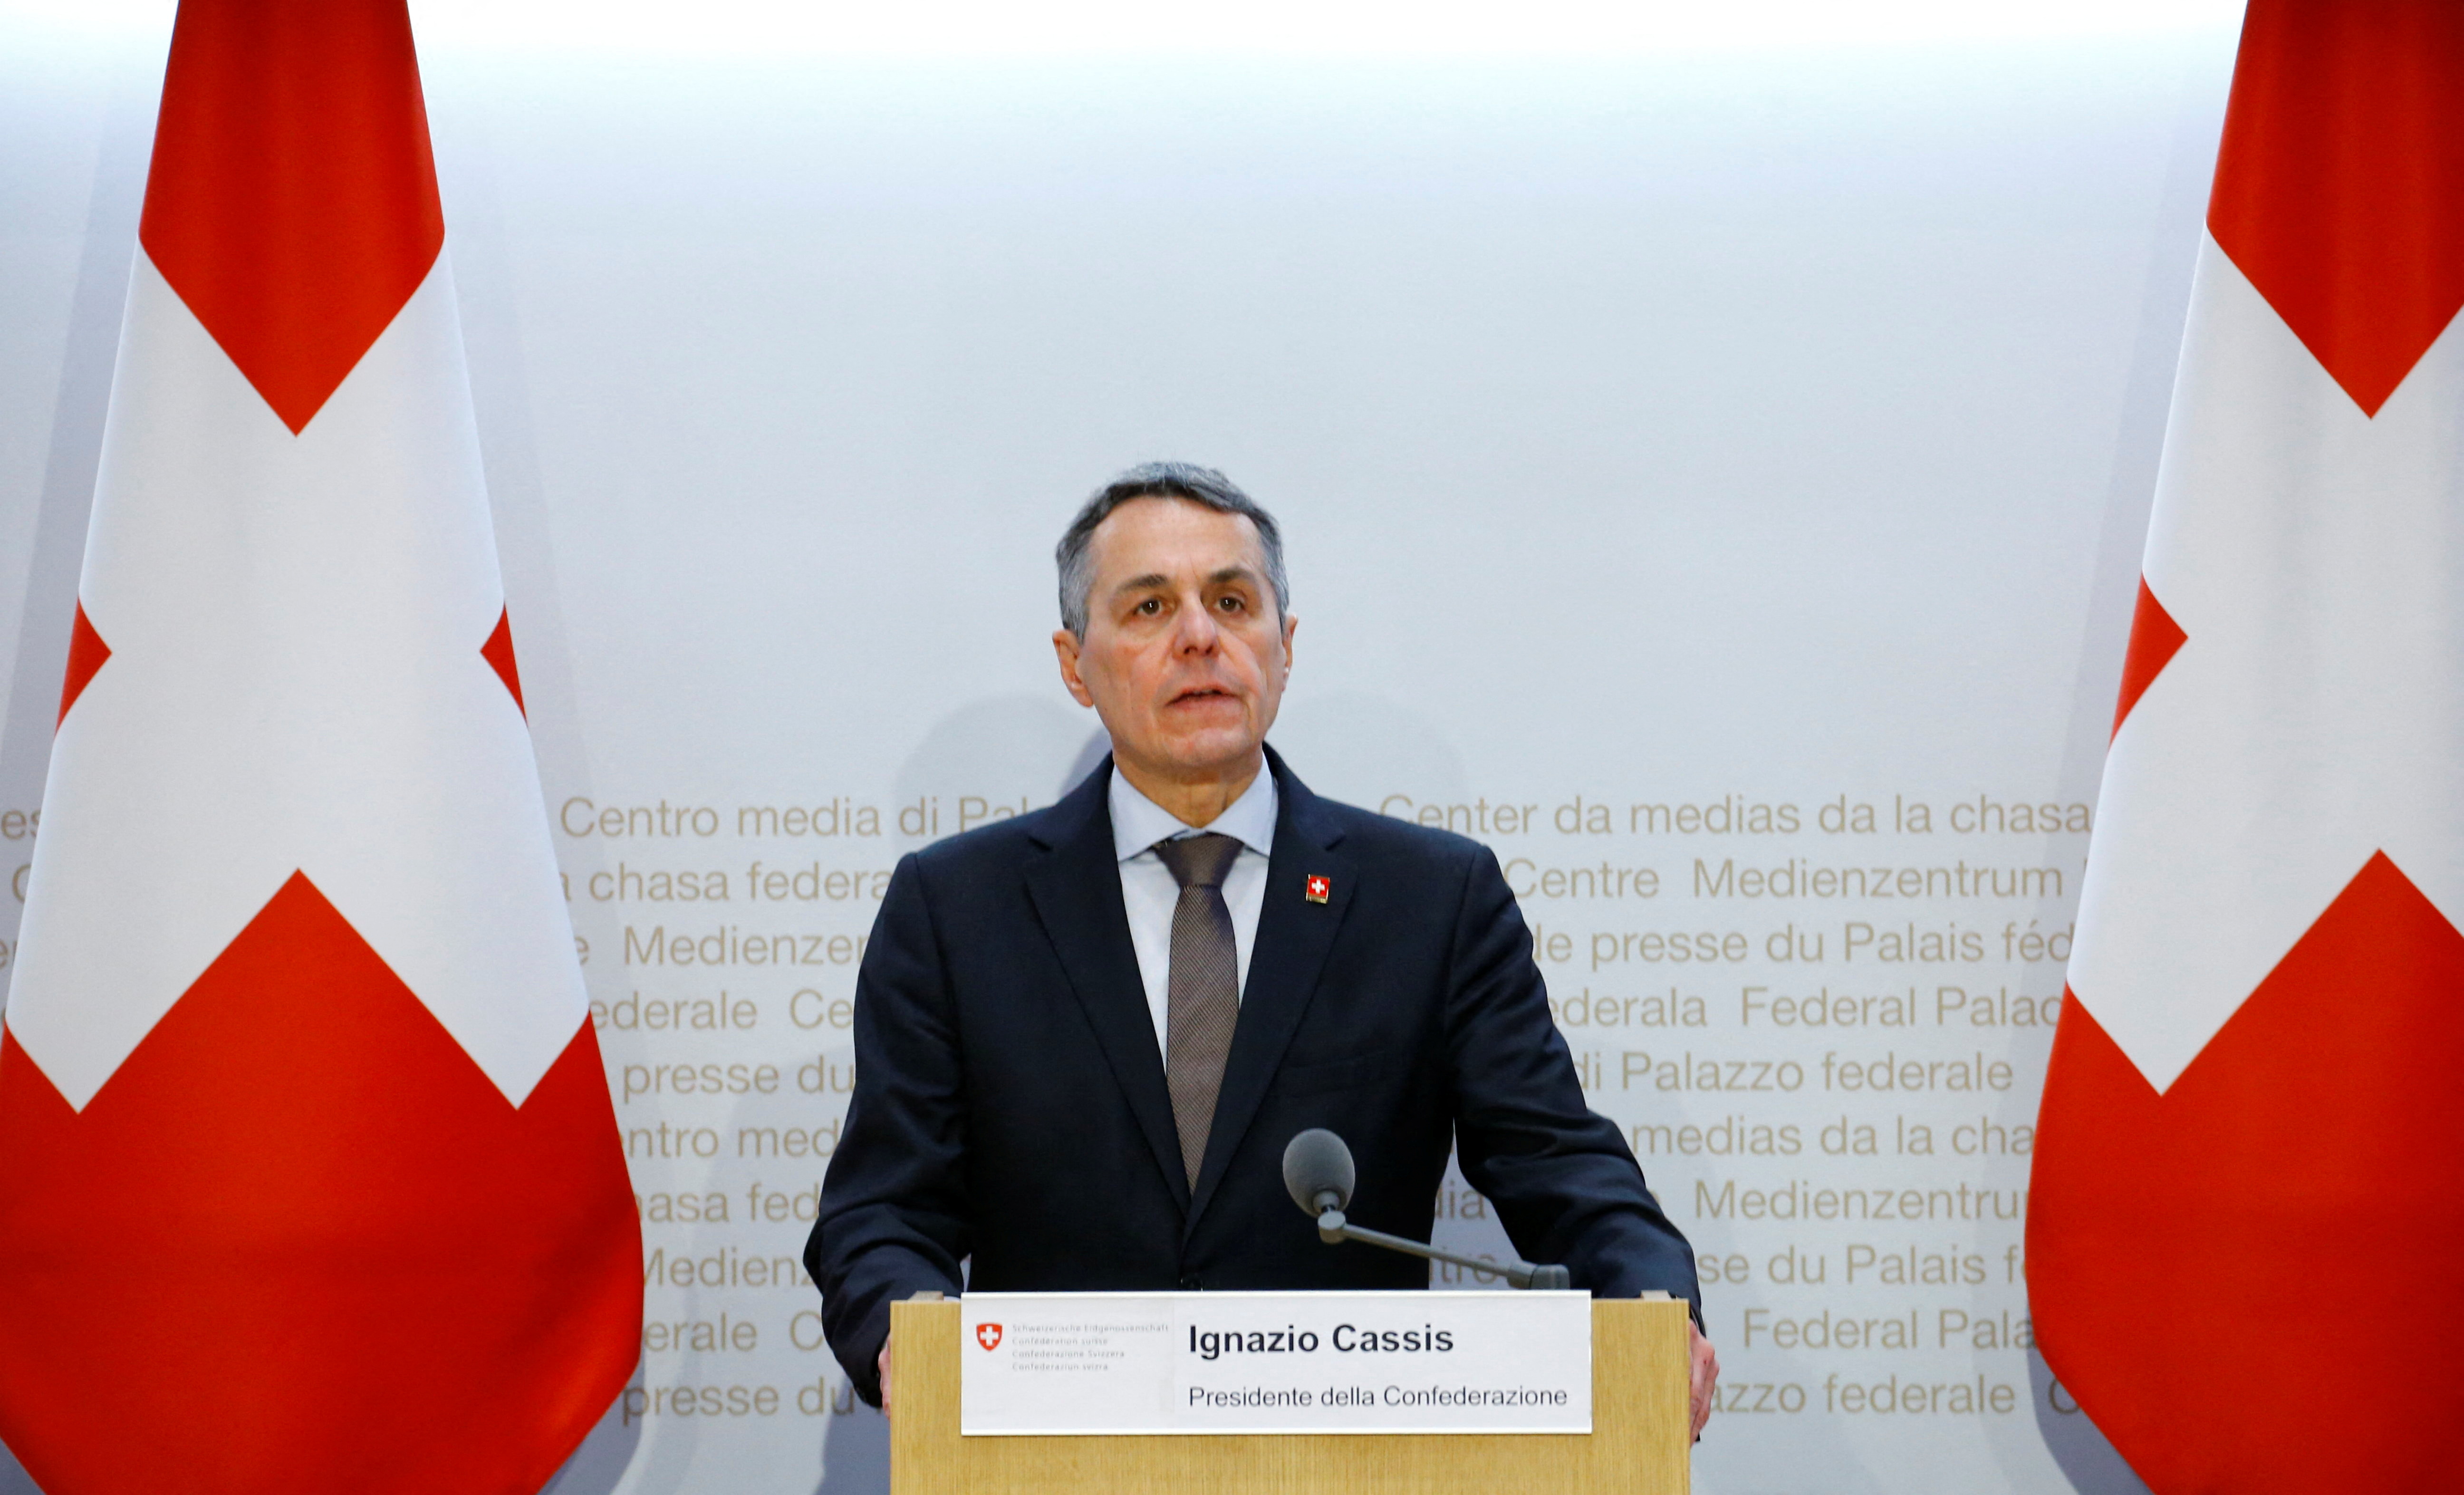 El presidente de Suiza, Ignazio Cassis, durante una conferencia en febrero pasdo. Suiza abandona la histórica neutralidad y sancionará a rusos implicados en la invasión a Ucrania (Reuters)